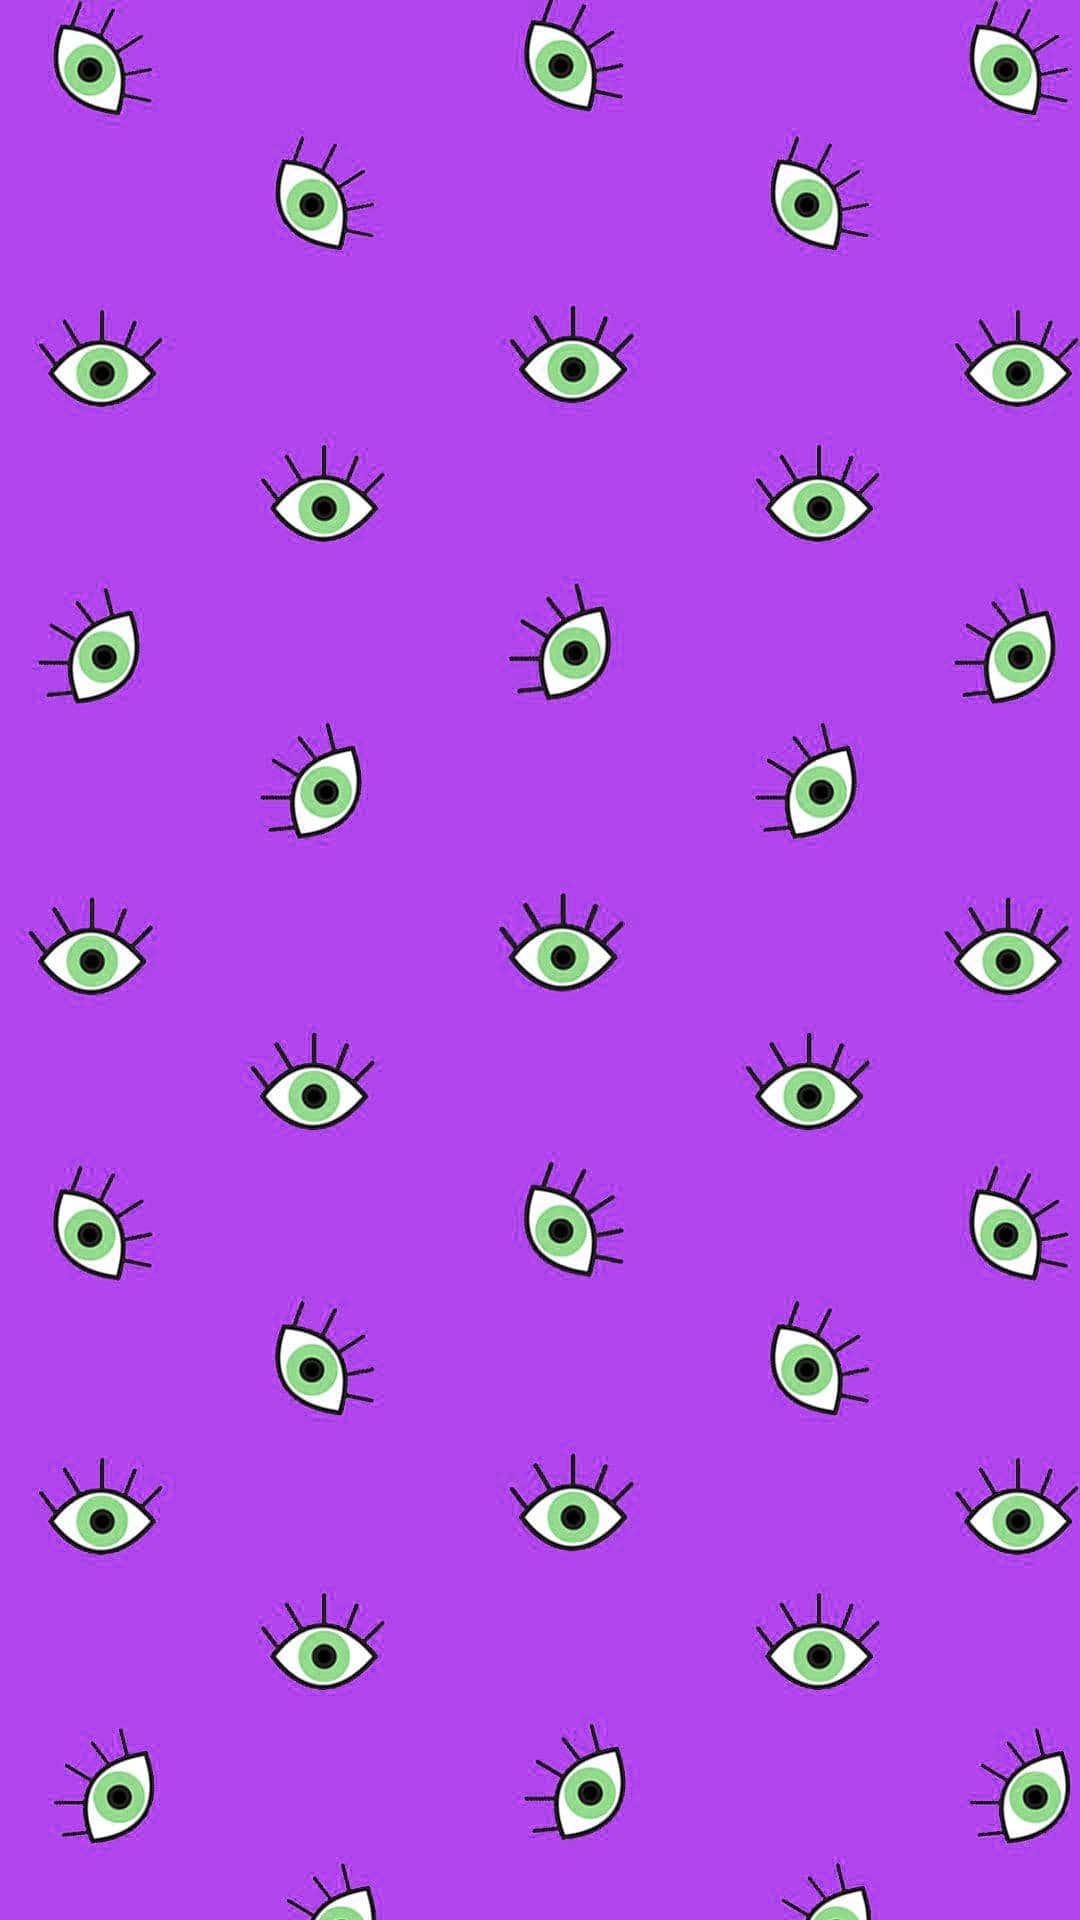 Evil eye Wallpaper